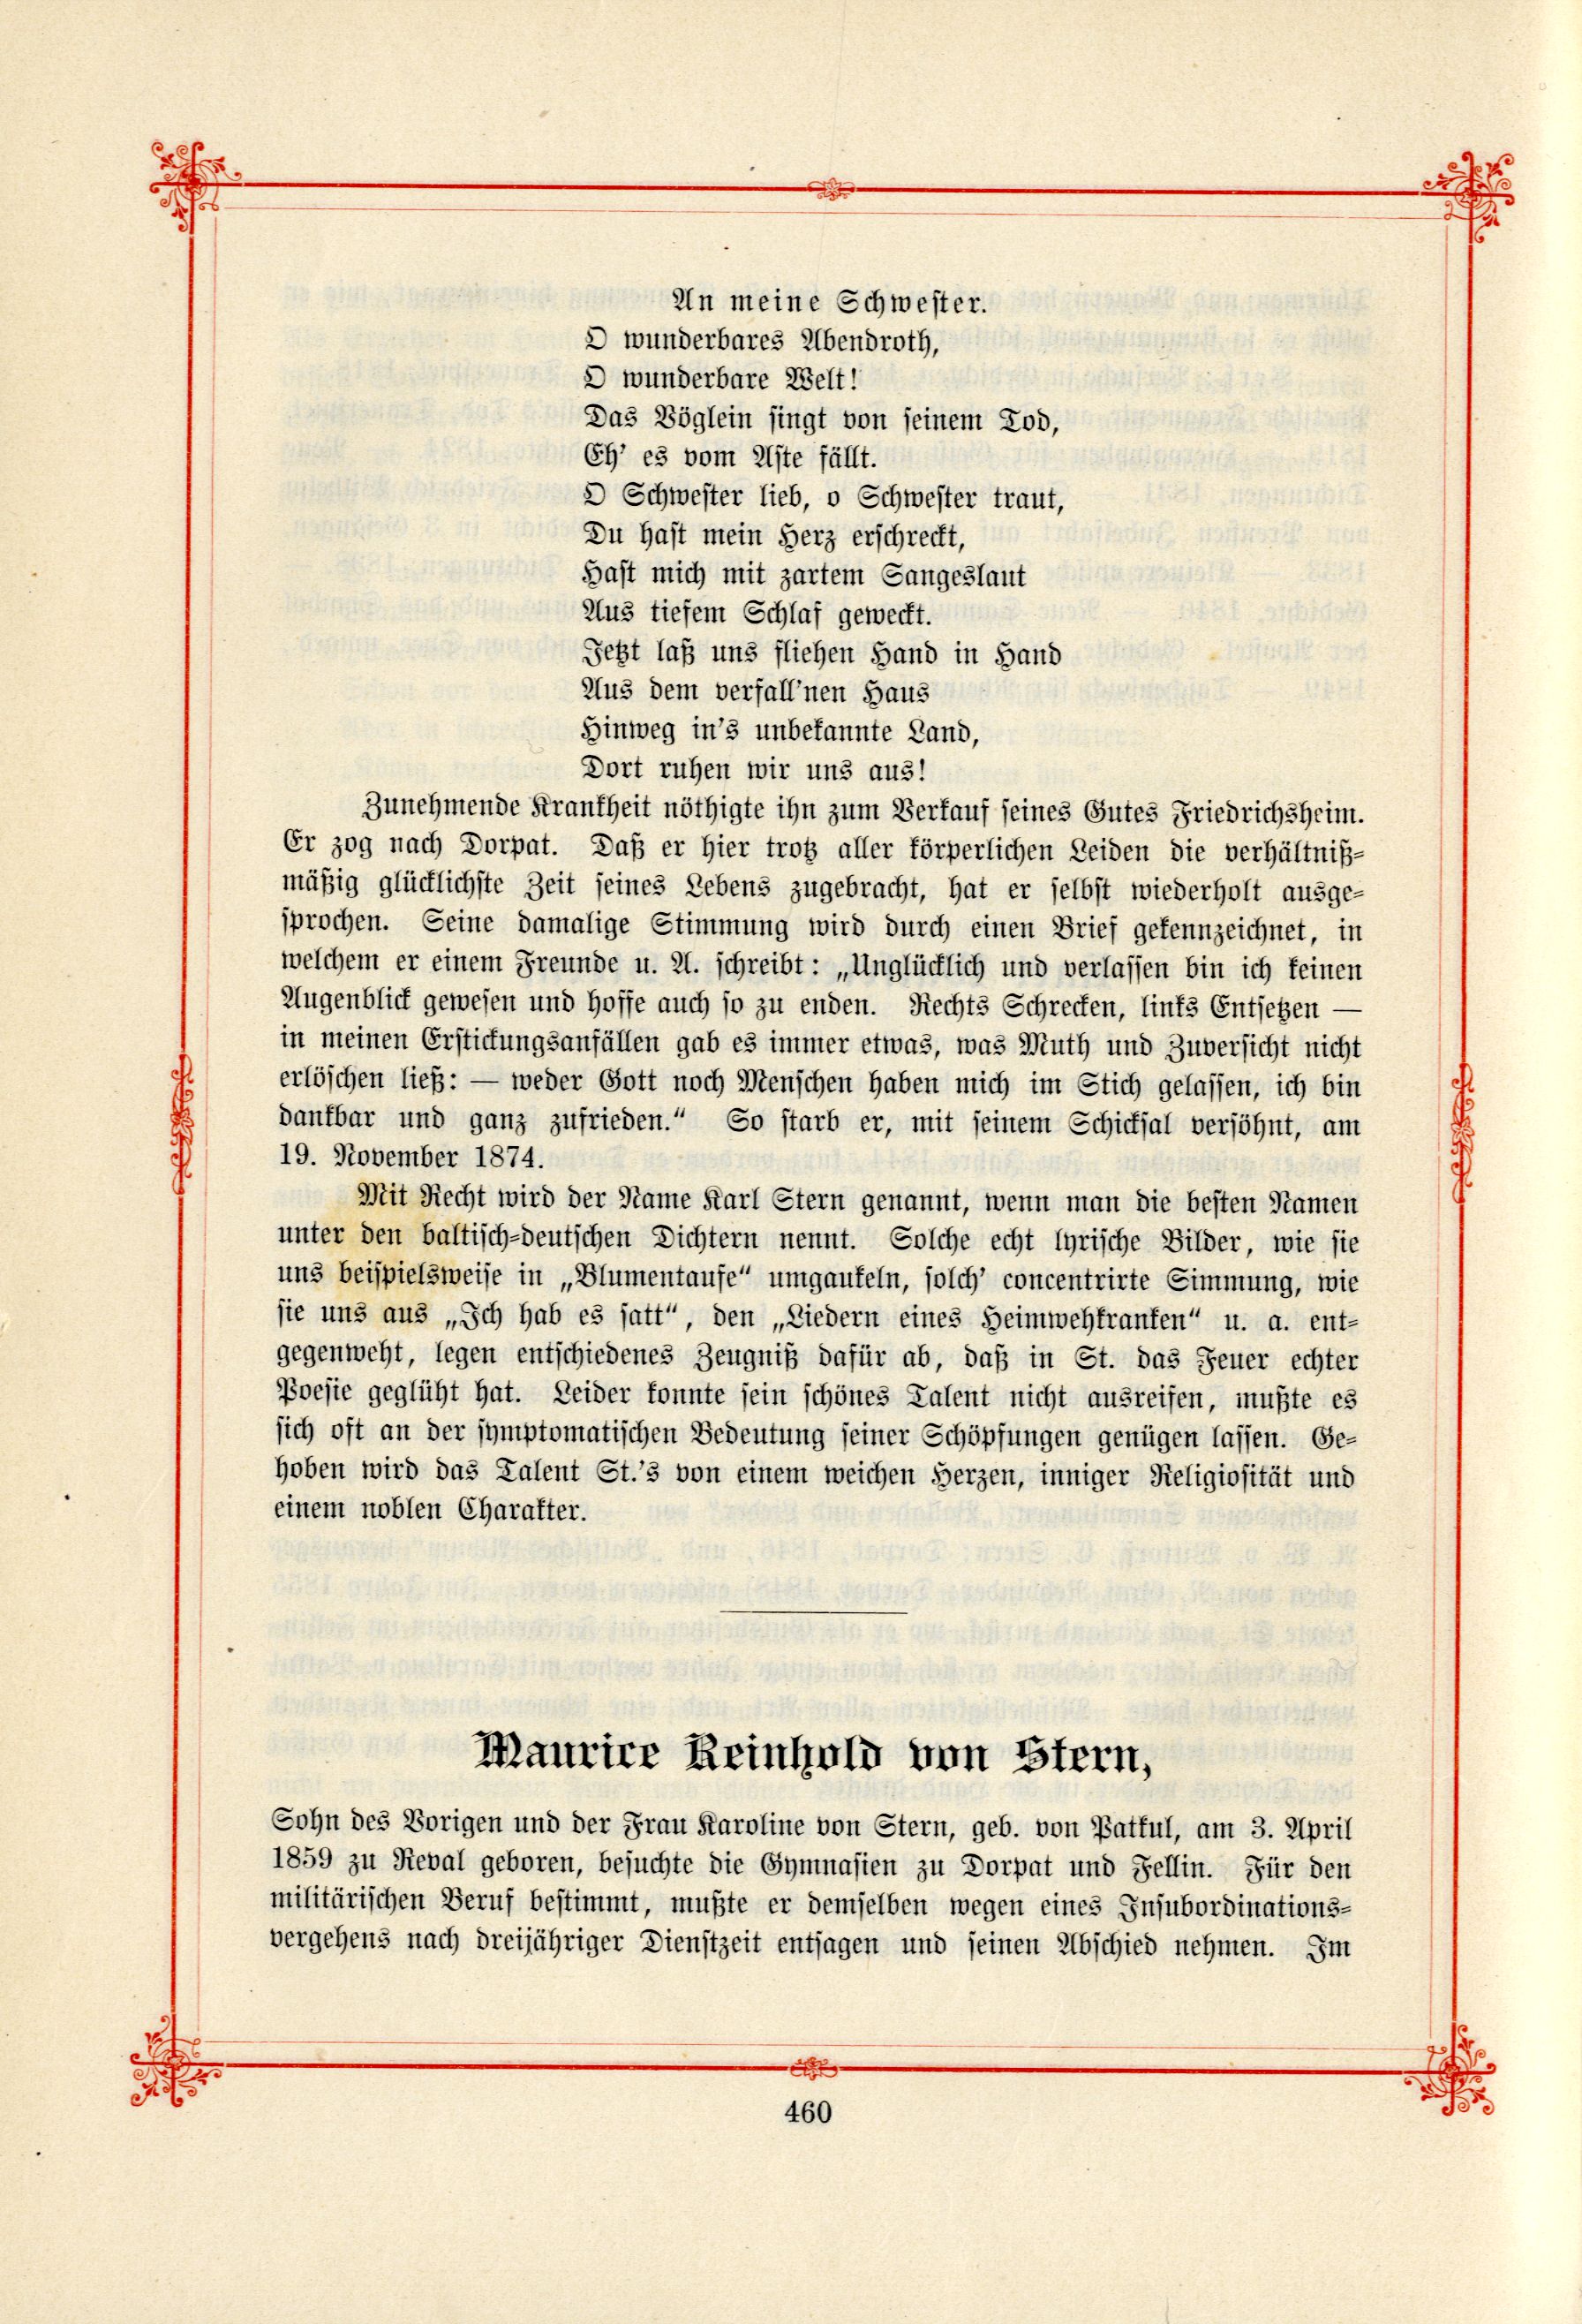 Das Baltische Dichterbuch (1895) | 506. (460) Main body of text